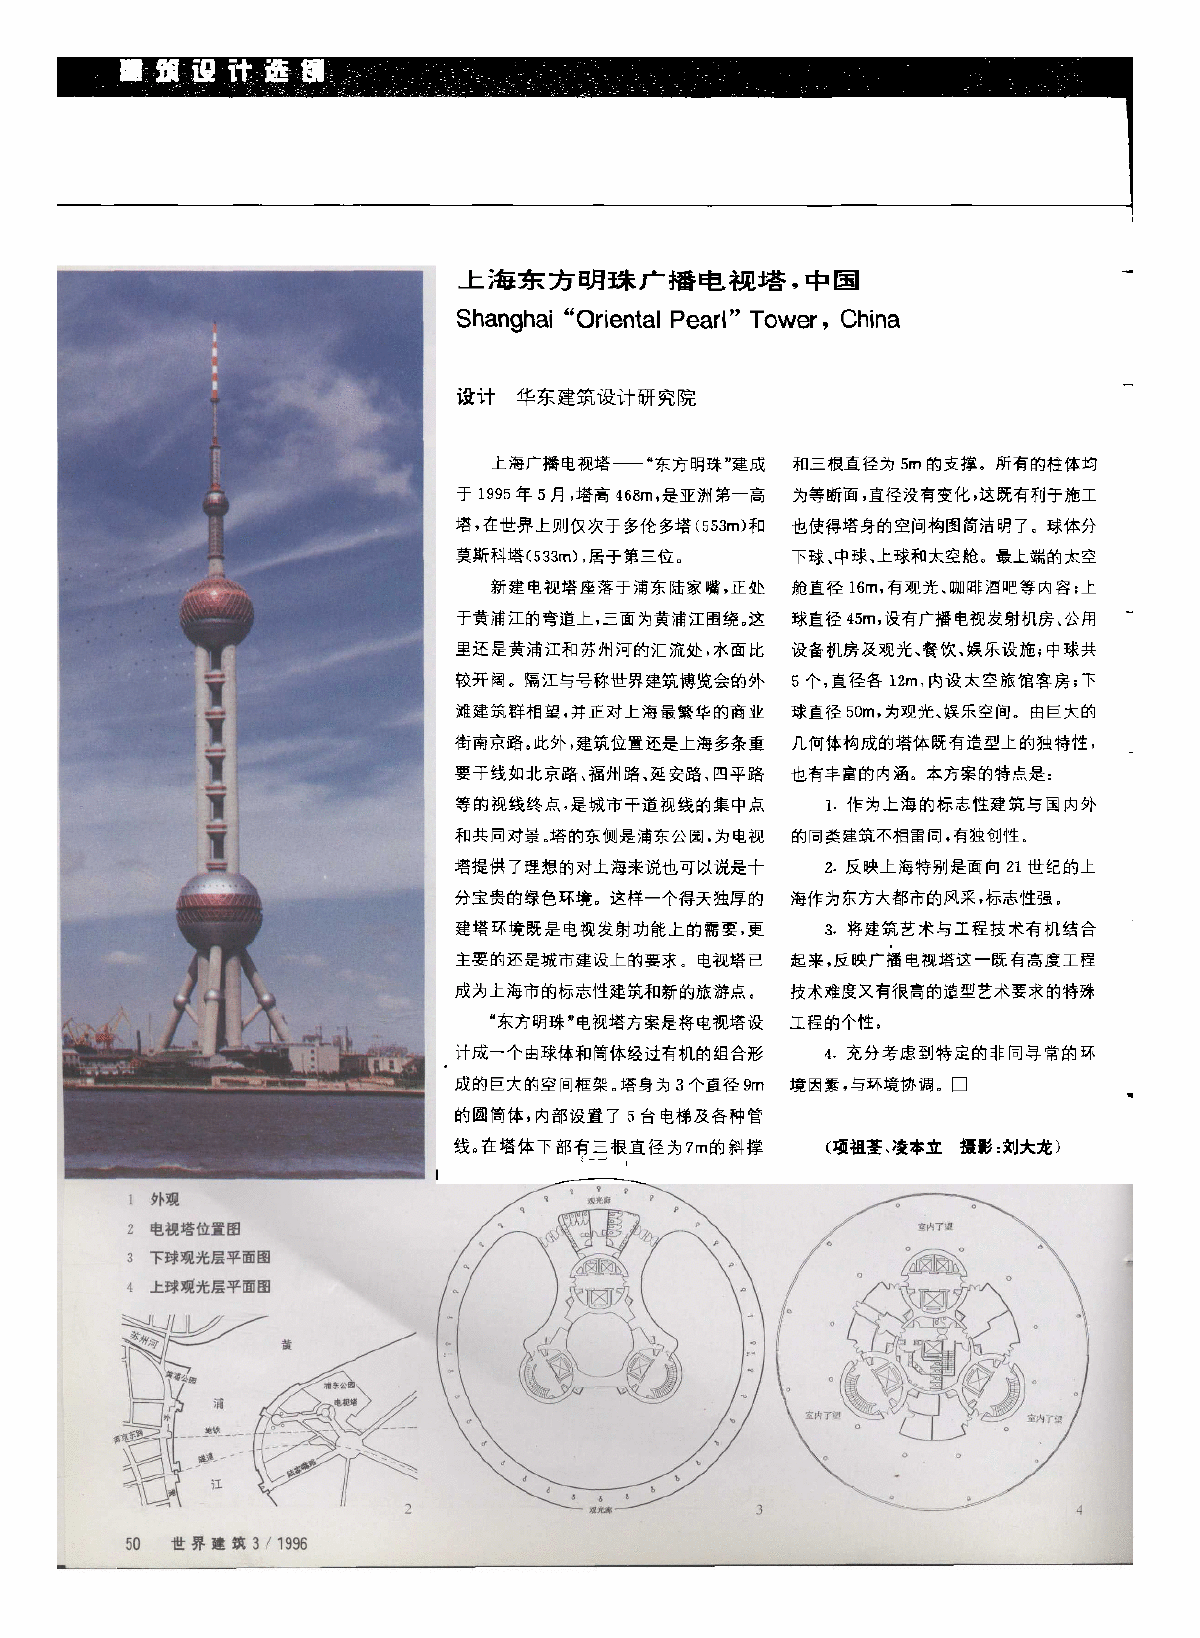 上海东方明珠广播电视塔,中国